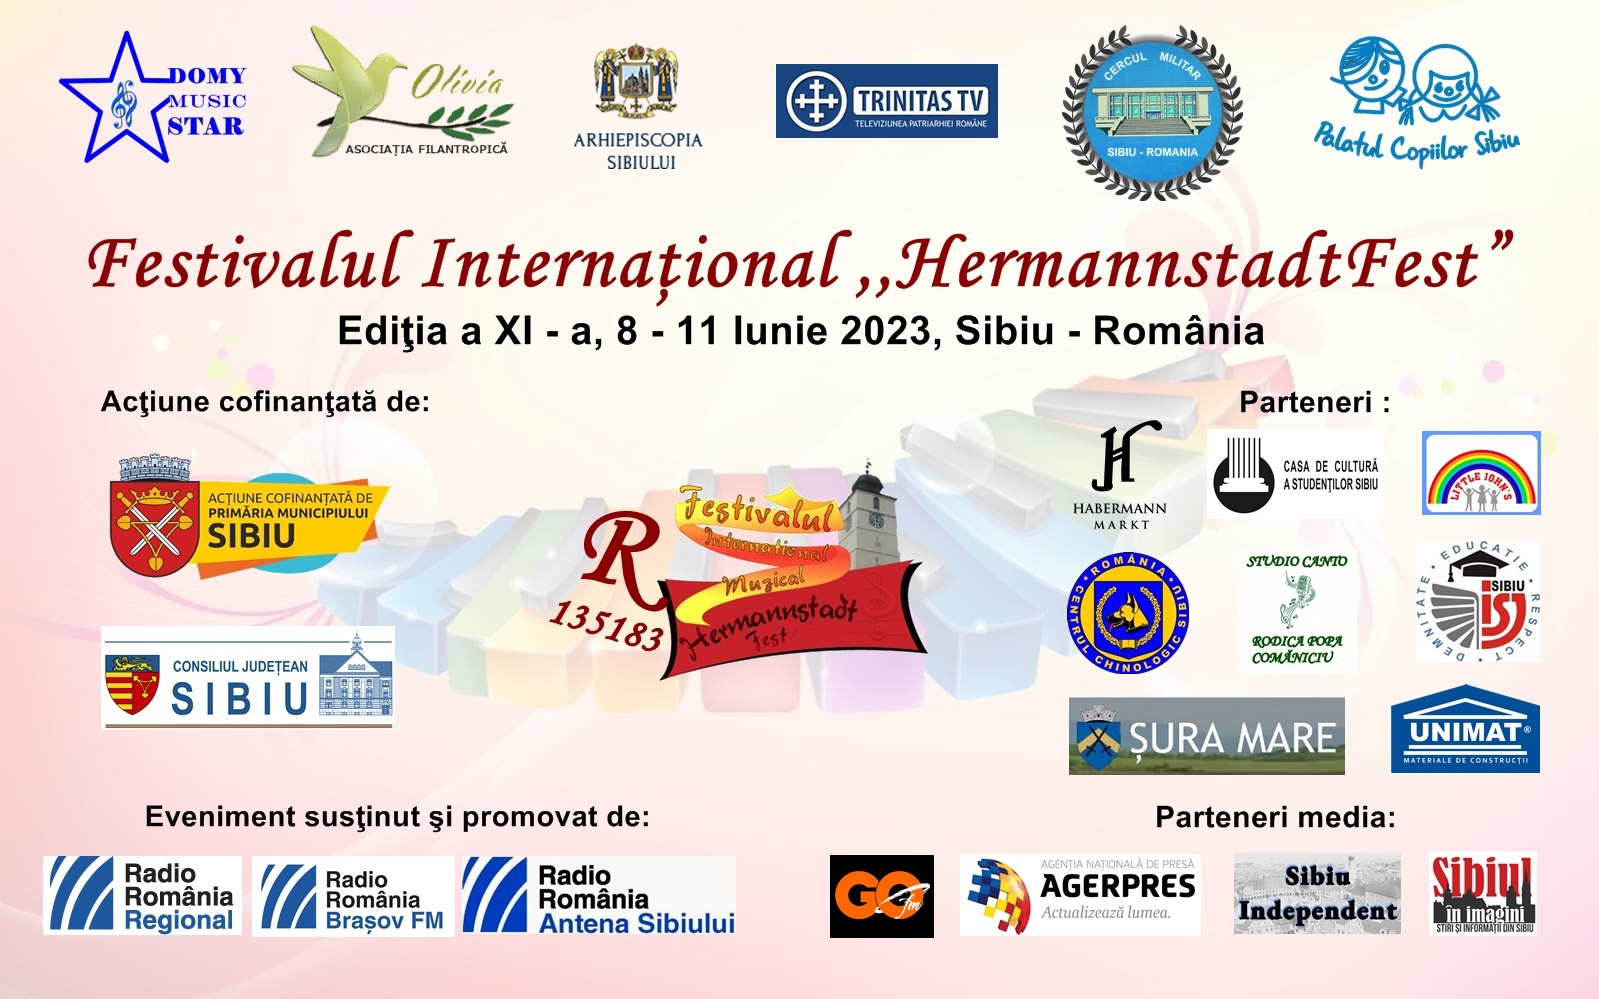 Festivalul Internaţional HermannstadtFest - ediţia a XI - a